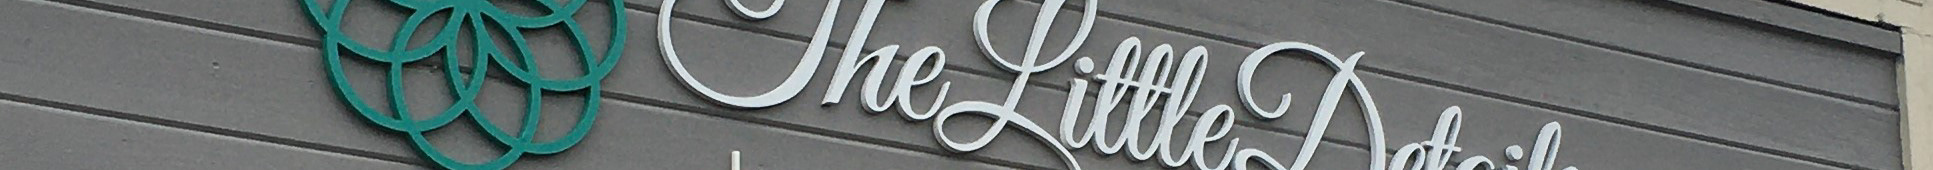 Springer Signcraft's profile banner